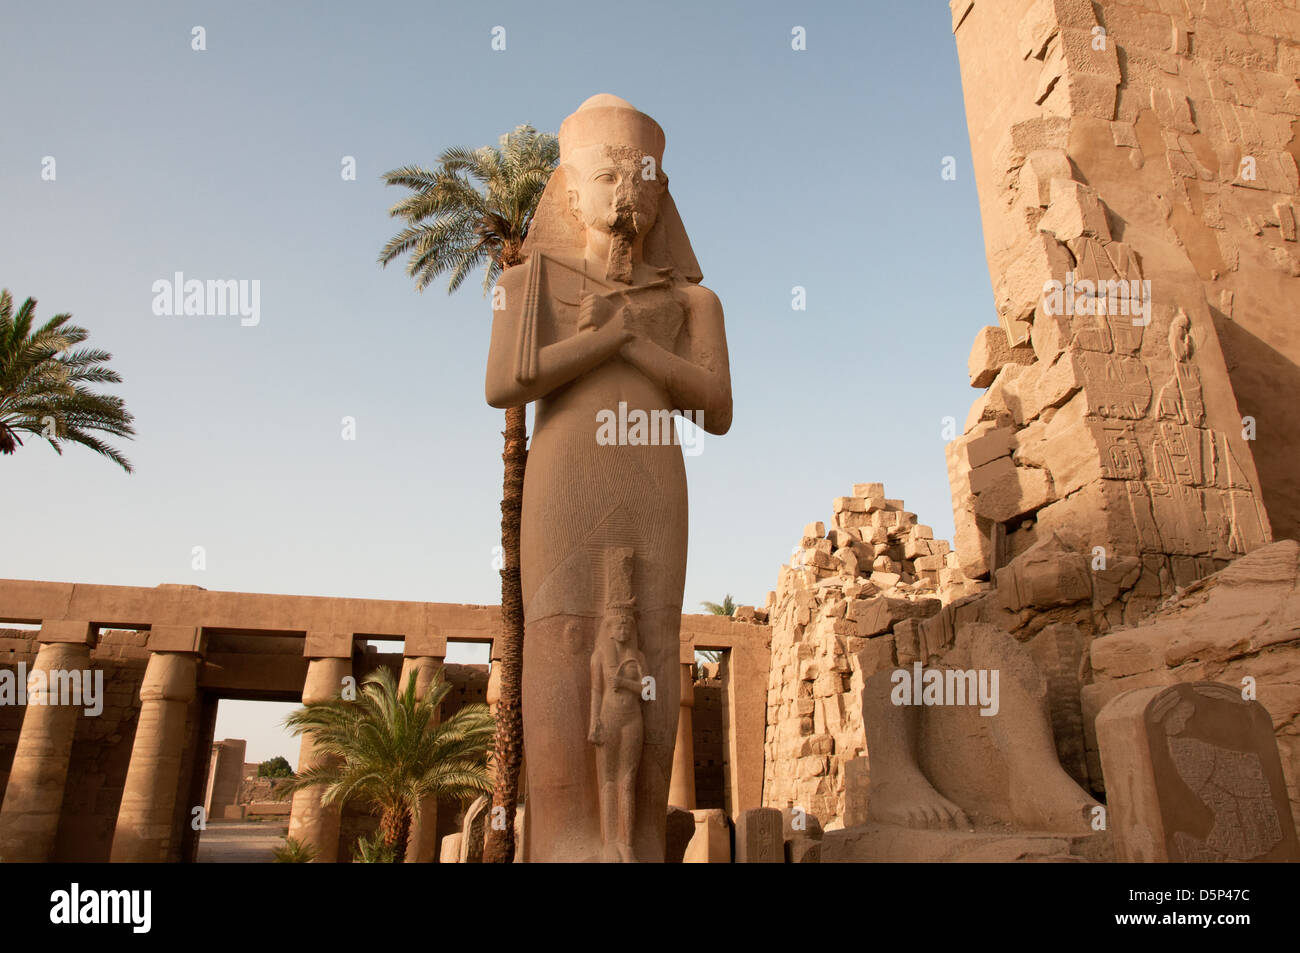 Estatua de Rameses II Karnak templo complejo Luxor Egipto Foto de stock